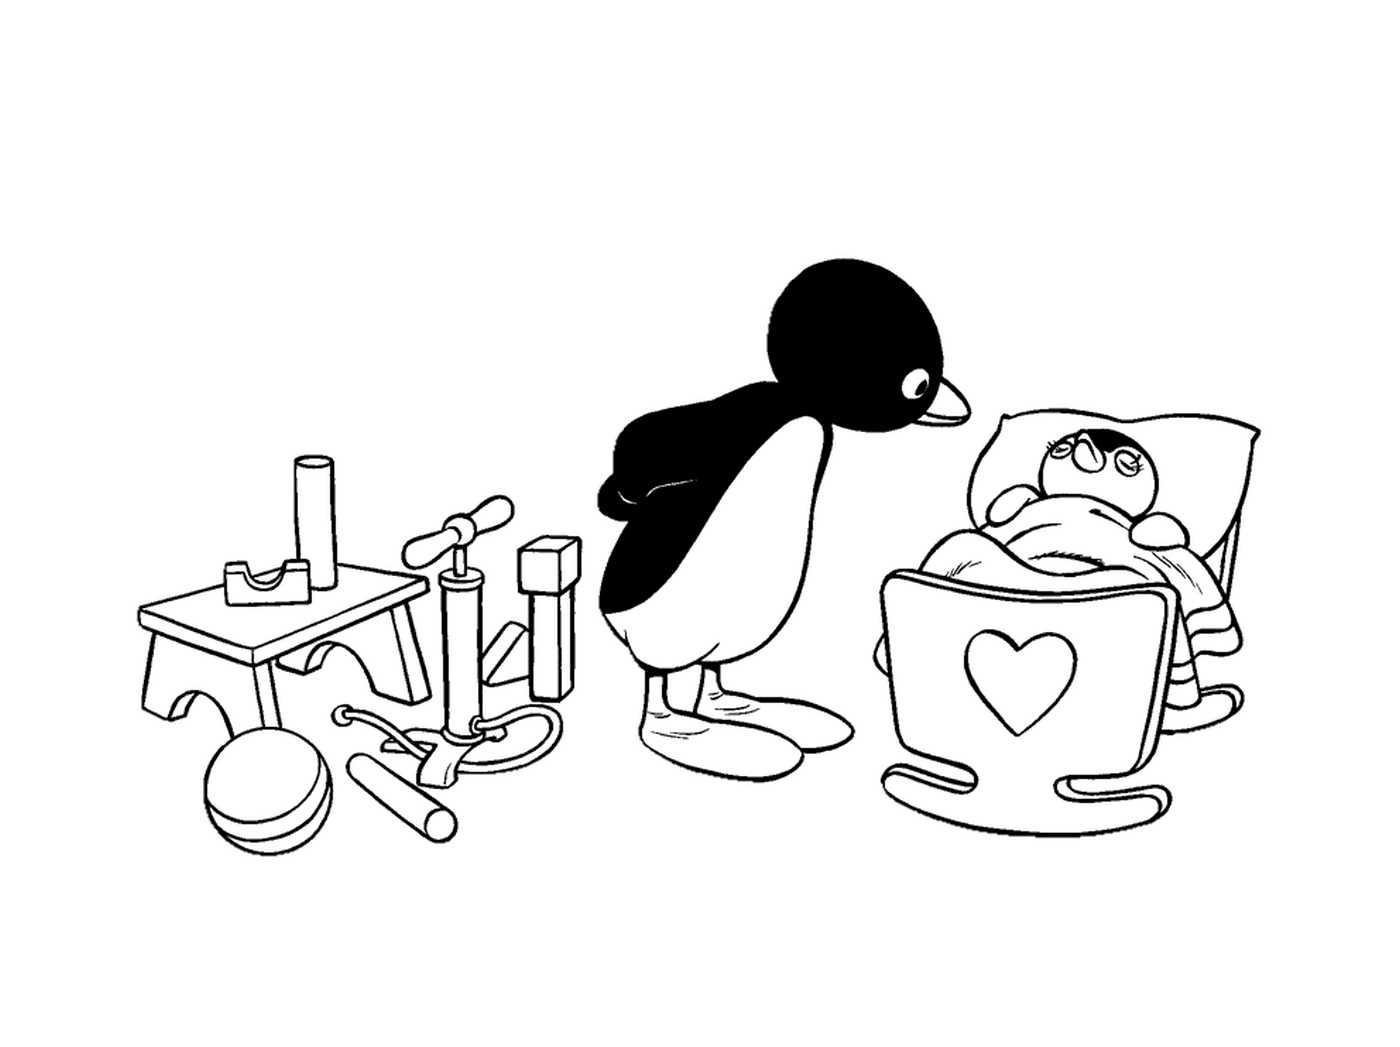   Pingu et bébé pingouin dans un bol 